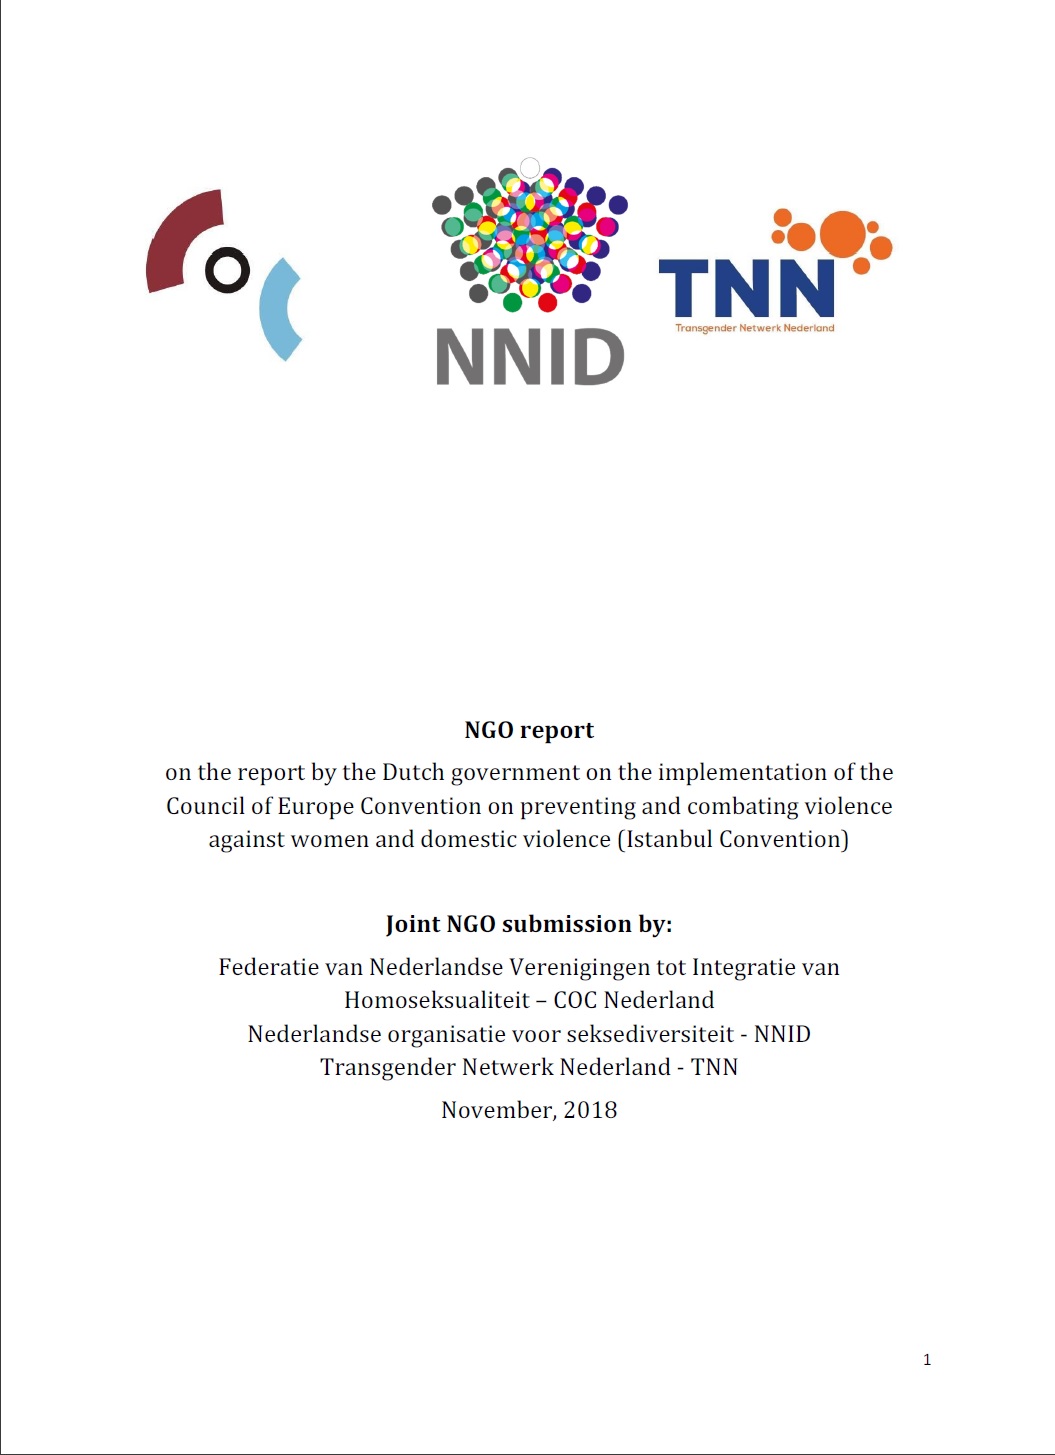 Voorblad van de joint submission NGO report inzake het rapport van de Nederlandse regering over de naleving van de Istanbul Conventie, met de logo's van Transgender Netwerk, NNID en COC Nederland.